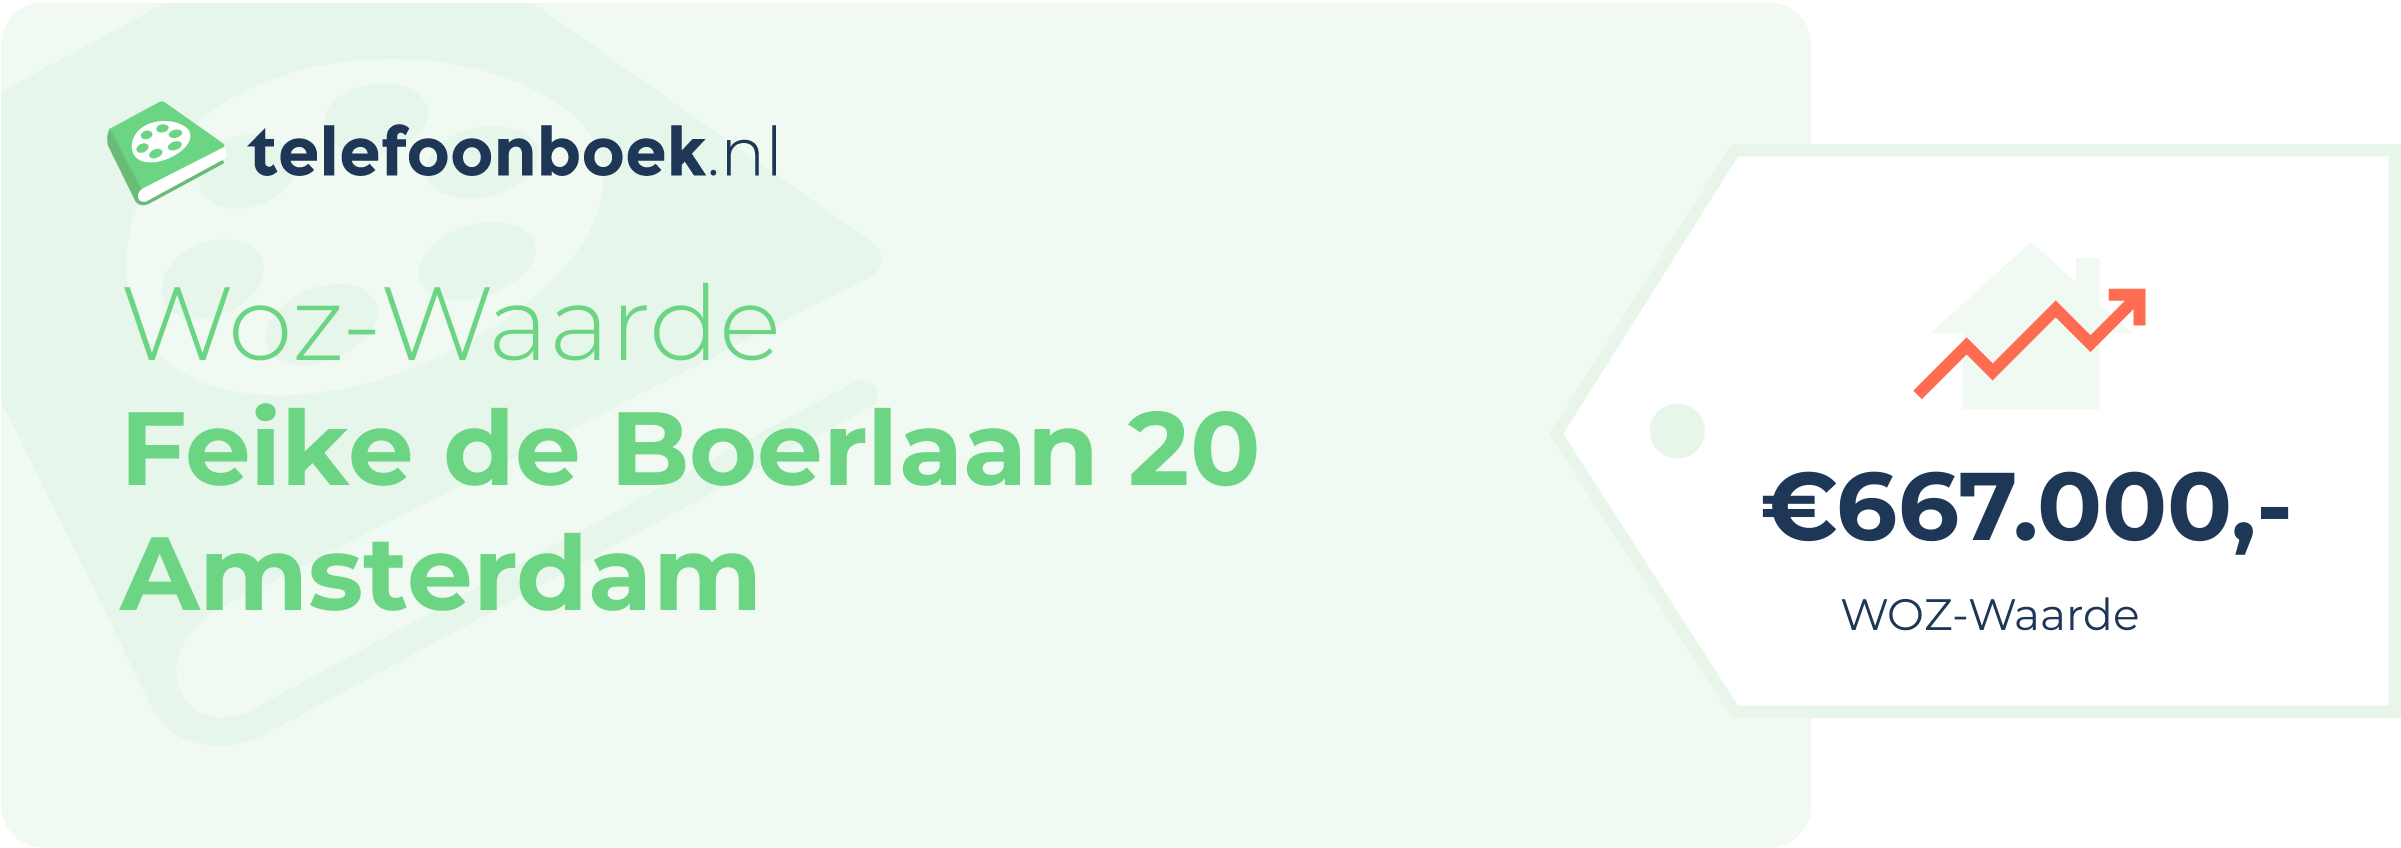 WOZ-waarde Feike De Boerlaan 20 Amsterdam